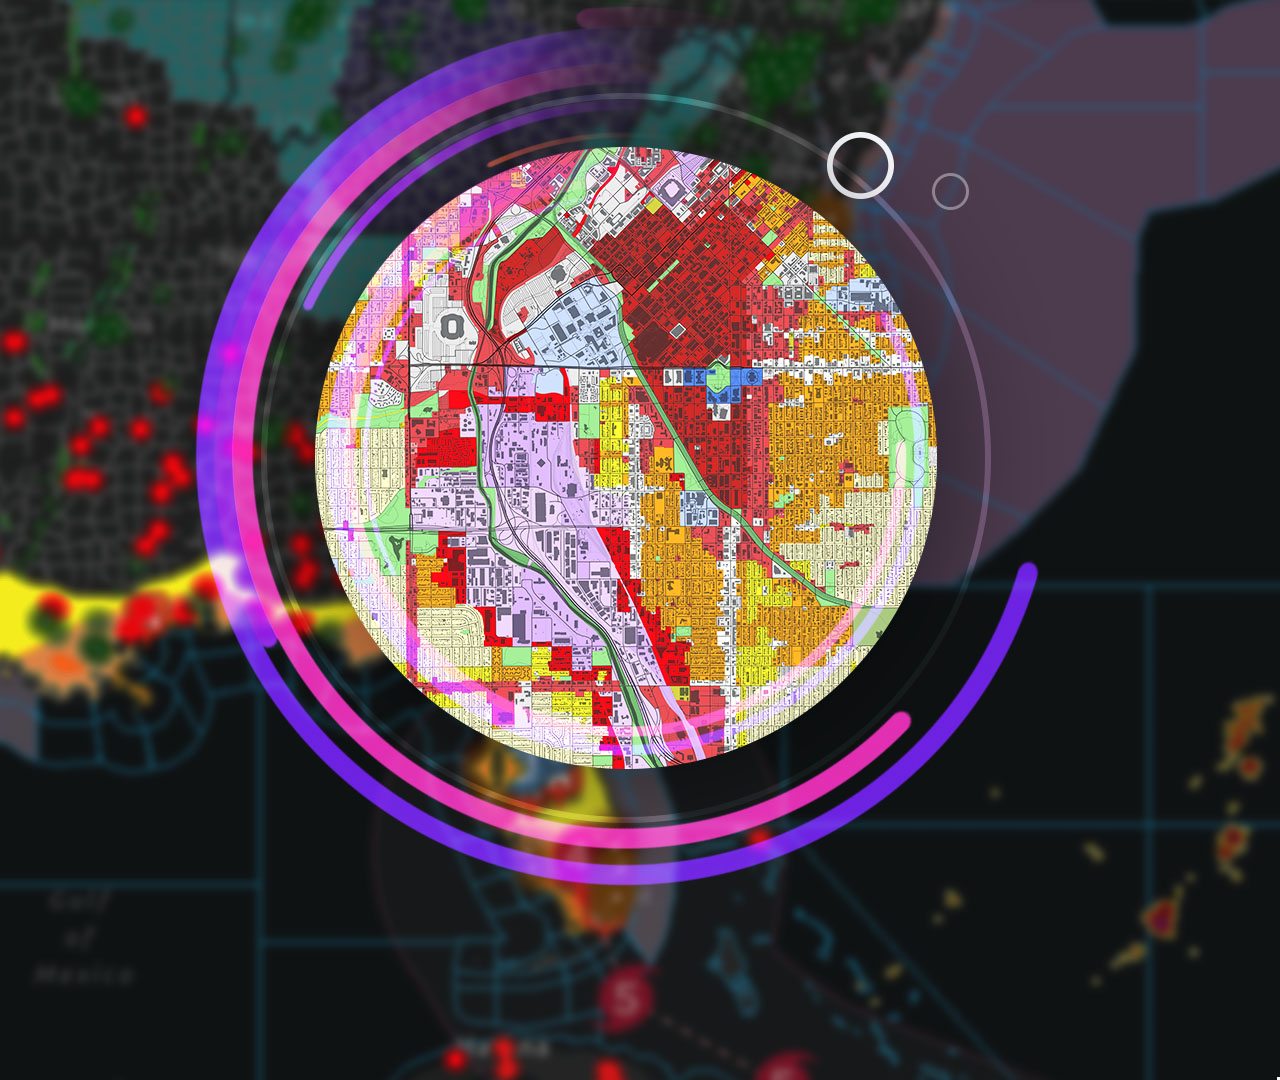 صورة لجهاز كمبيوتر يعرض خريطة بيانات مكانية، محاطة بصور لمباني المدينة الشاهقة